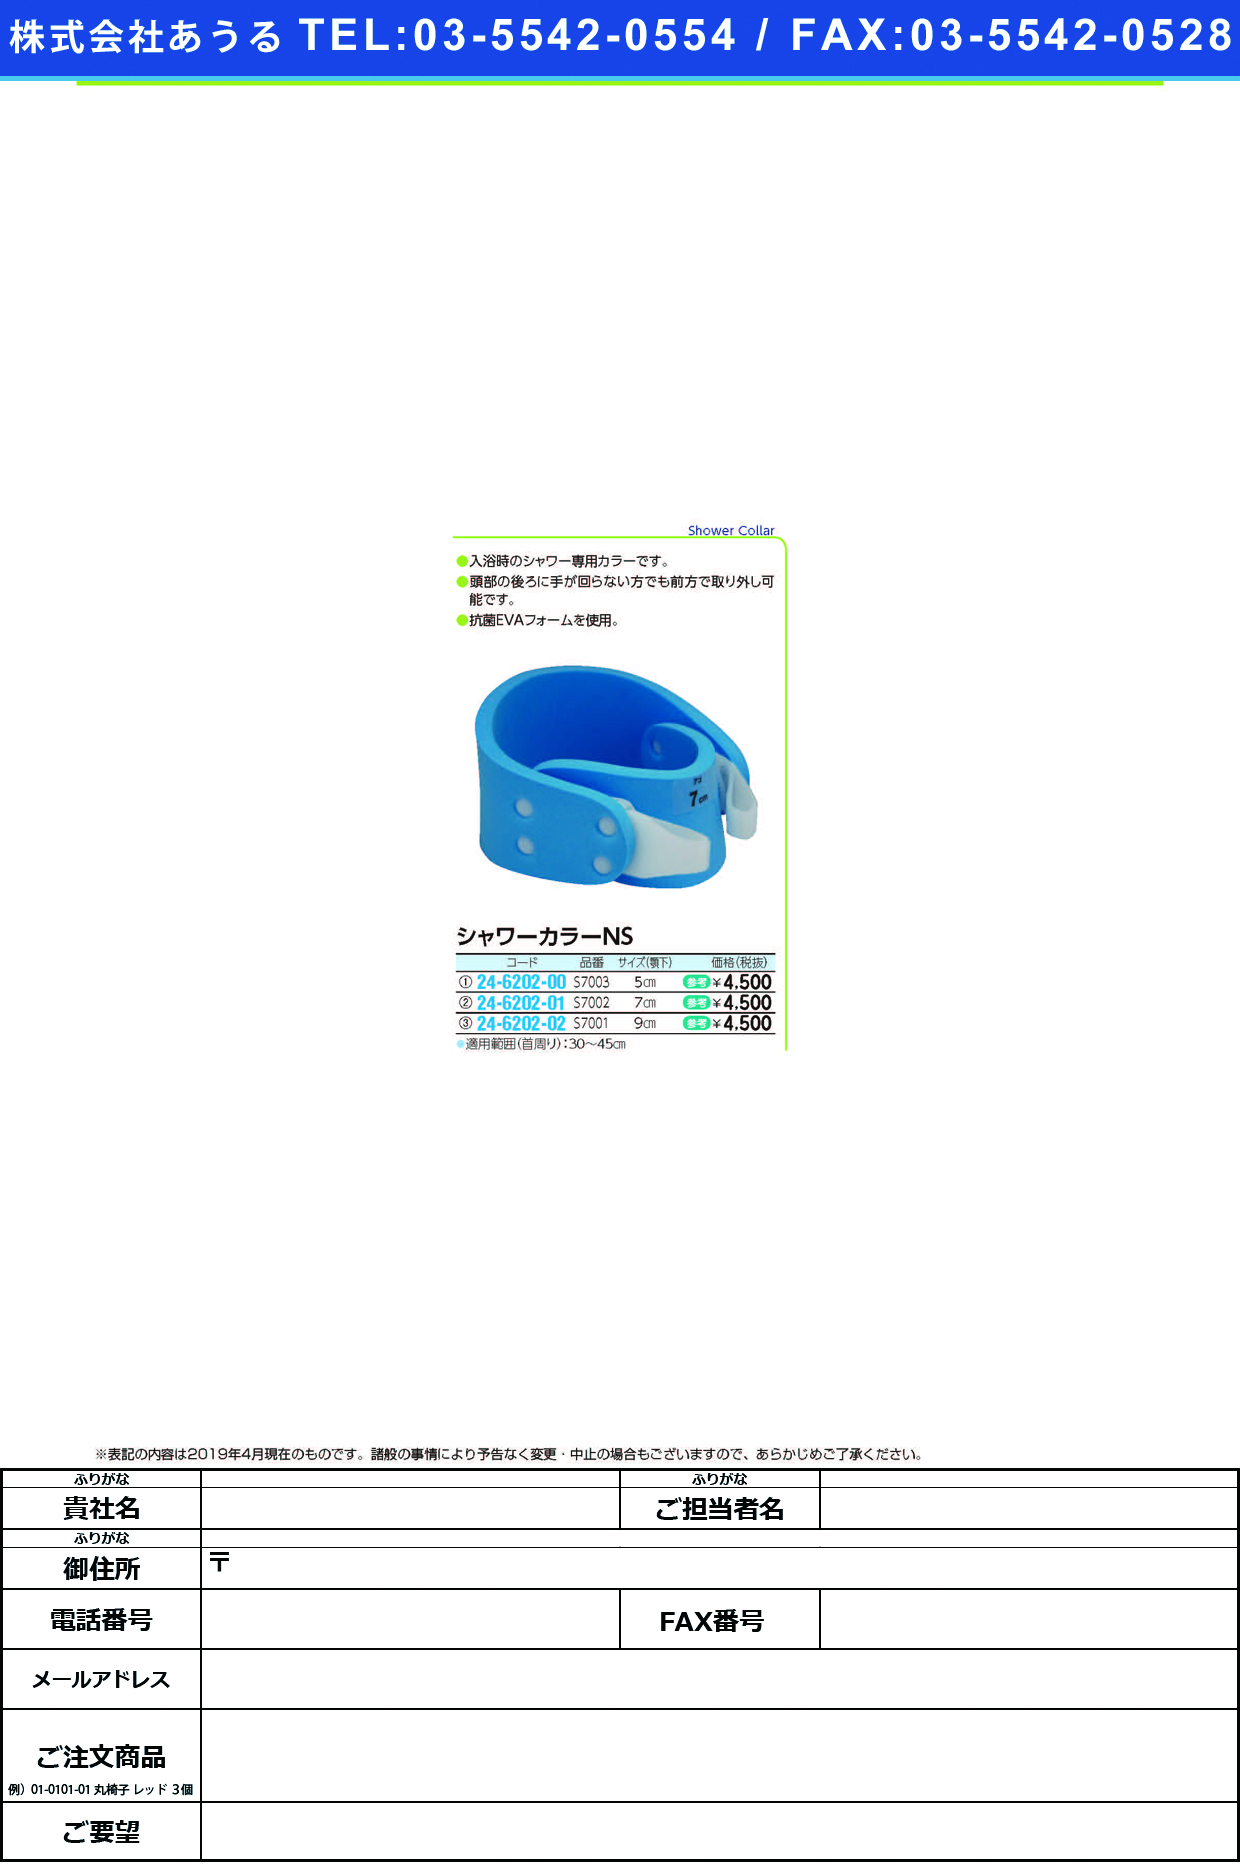 (24-6202-02)シャワーカラーＮＳ S7001(ｱｺﾞｼﾀｽﾝﾎﾟｳ9CM) ｼｬﾜｰｶﾗｰNS【1個単位】【2019年カタログ商品】